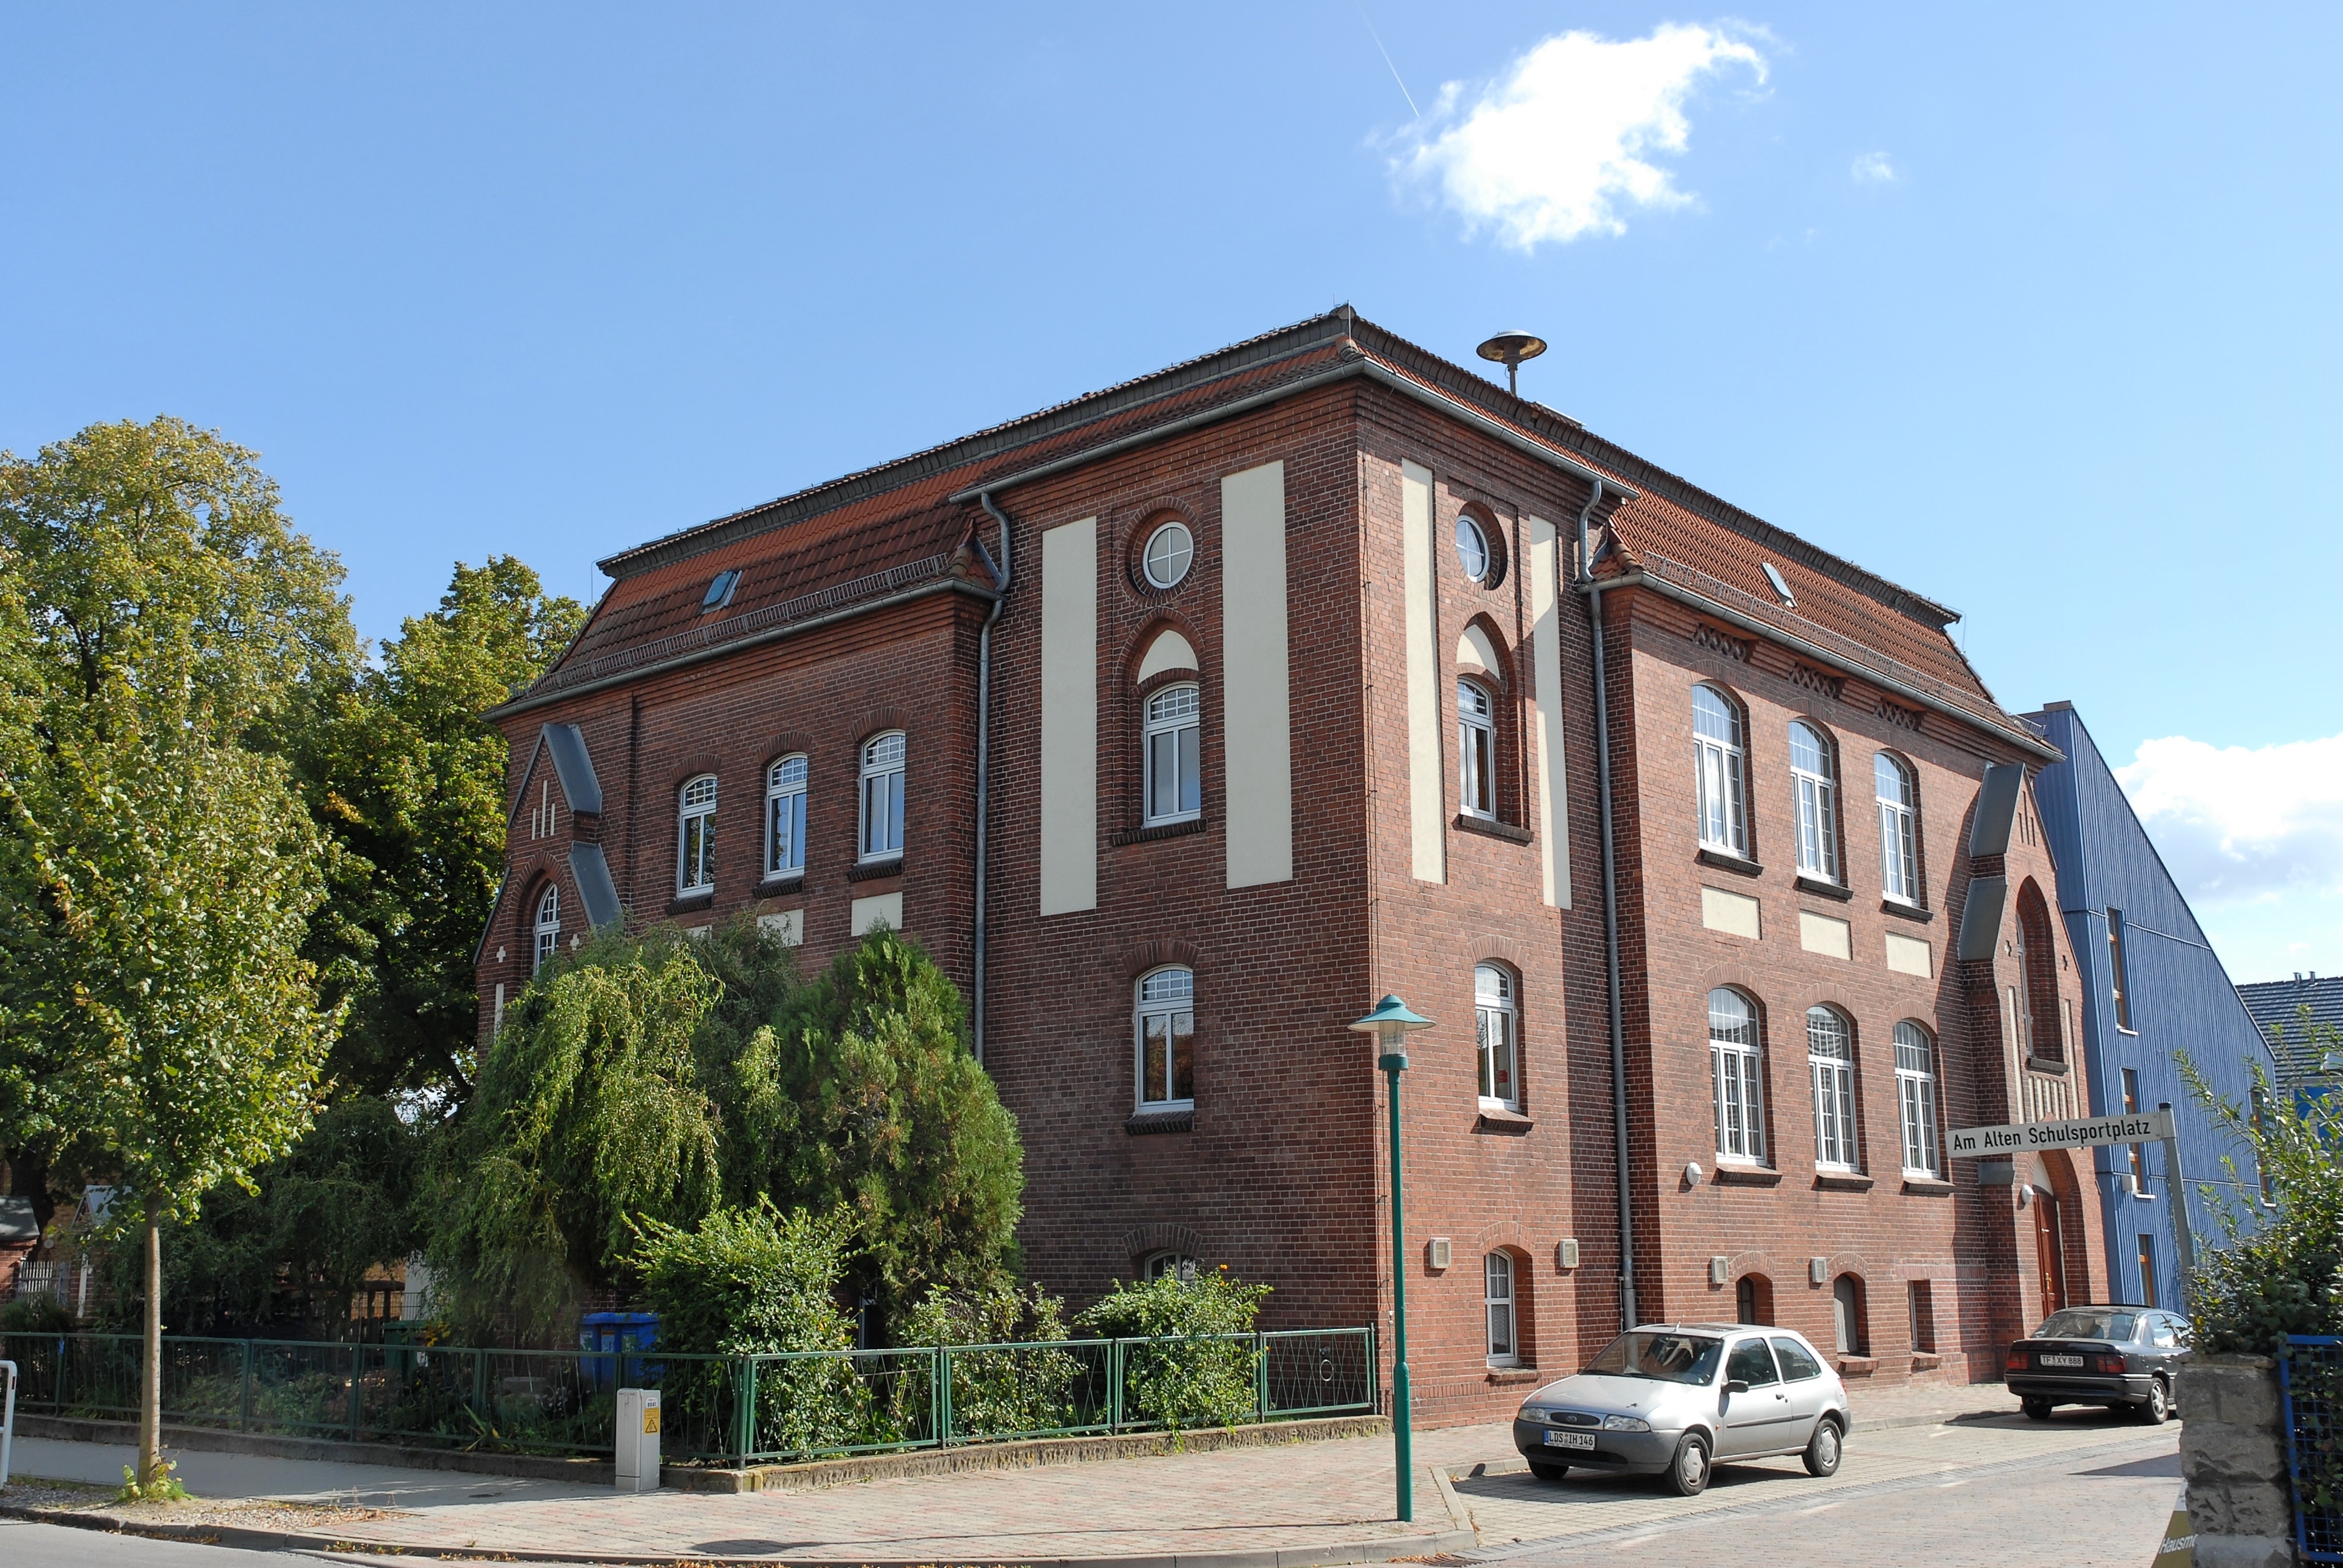 Das Gebäude Kita Blausternchen in der Straße Am Alten Schulsportplatz mit einer Backstein Fassade.